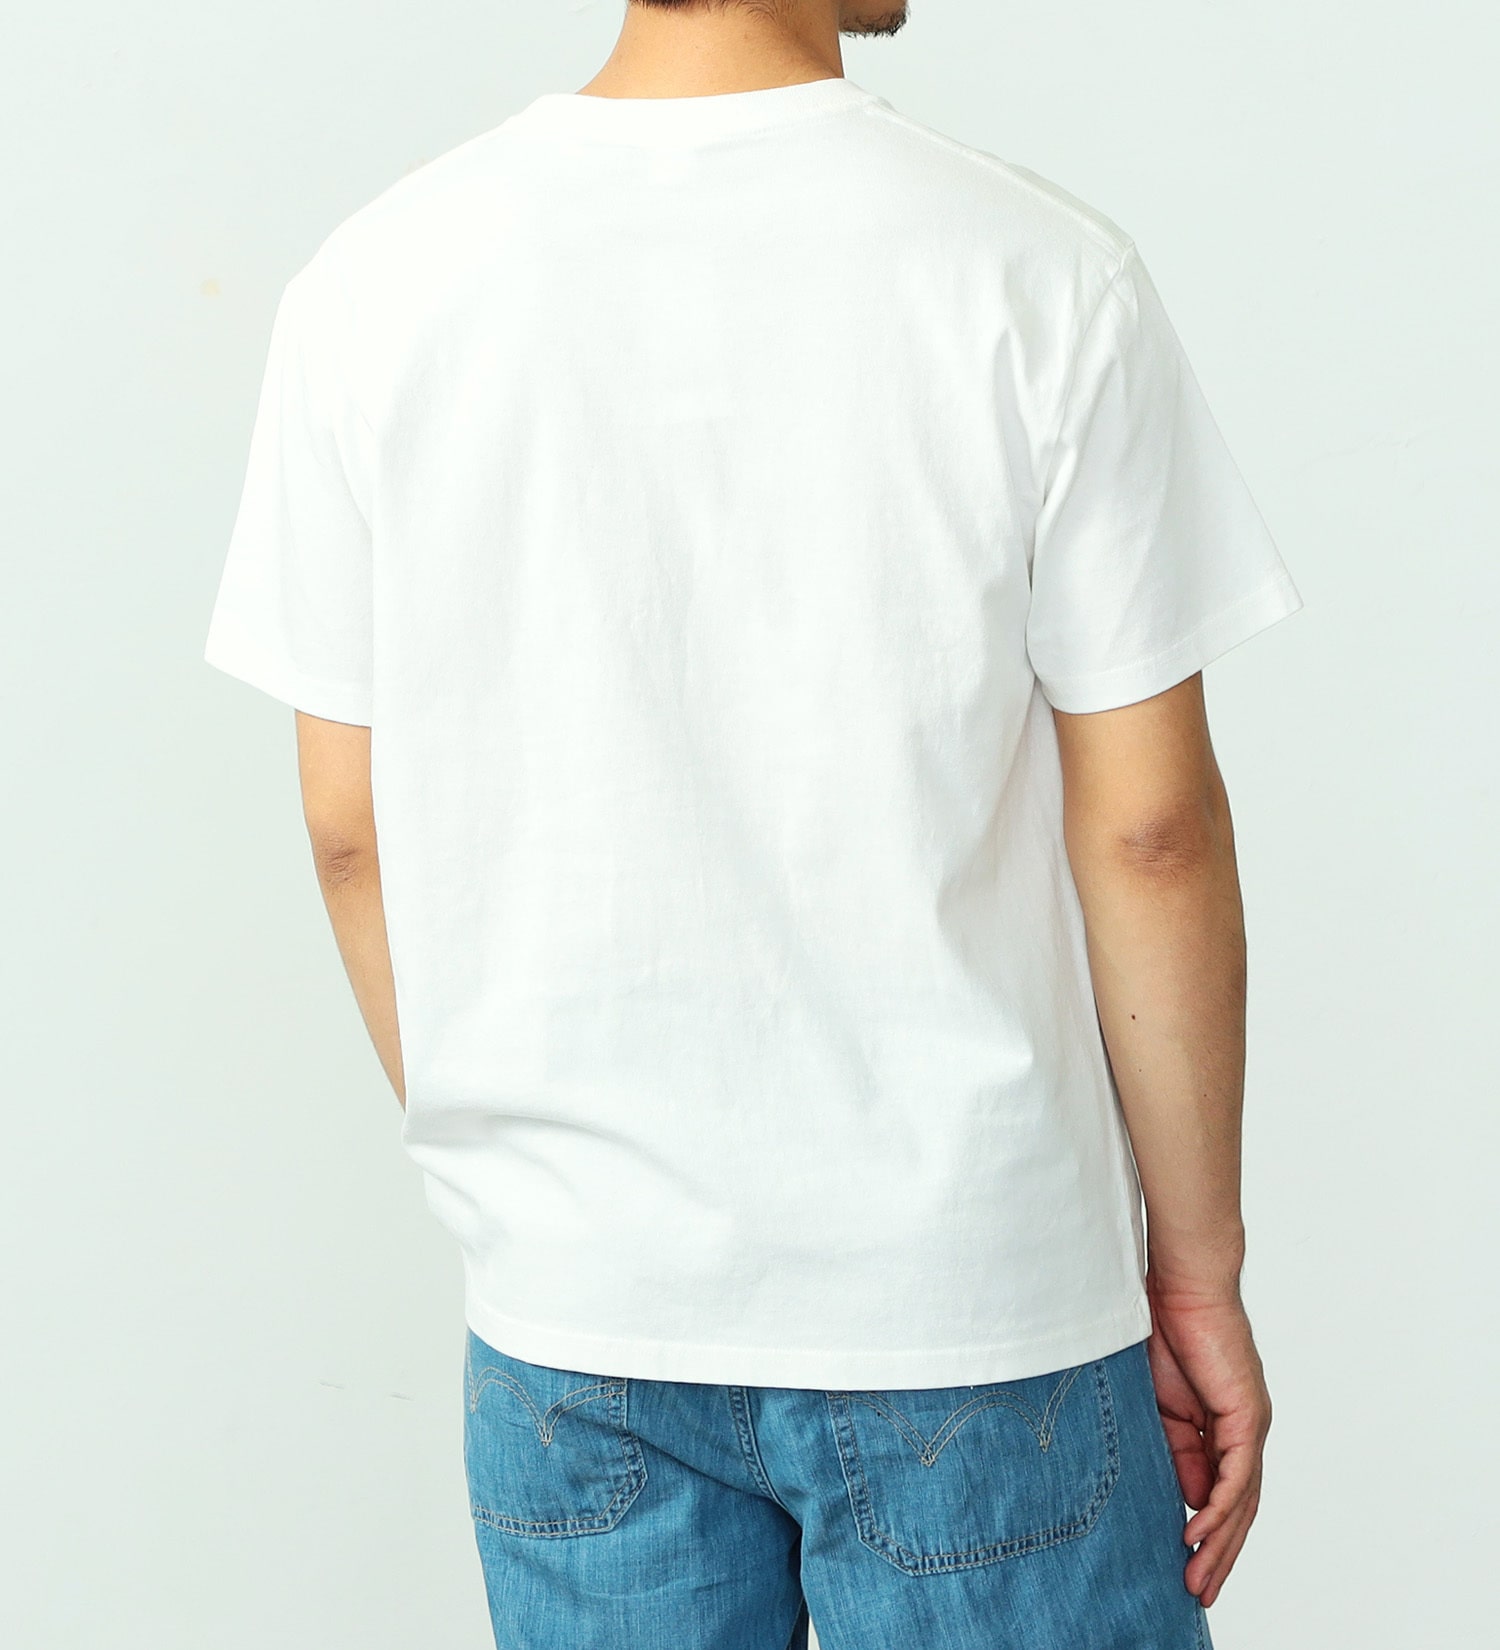 EDWIN(エドウイン)のポケットボックスロゴ半袖Tシャツ【アウトレット店舗・WEB限定】|トップス/Tシャツ/カットソー/メンズ|ホワイト